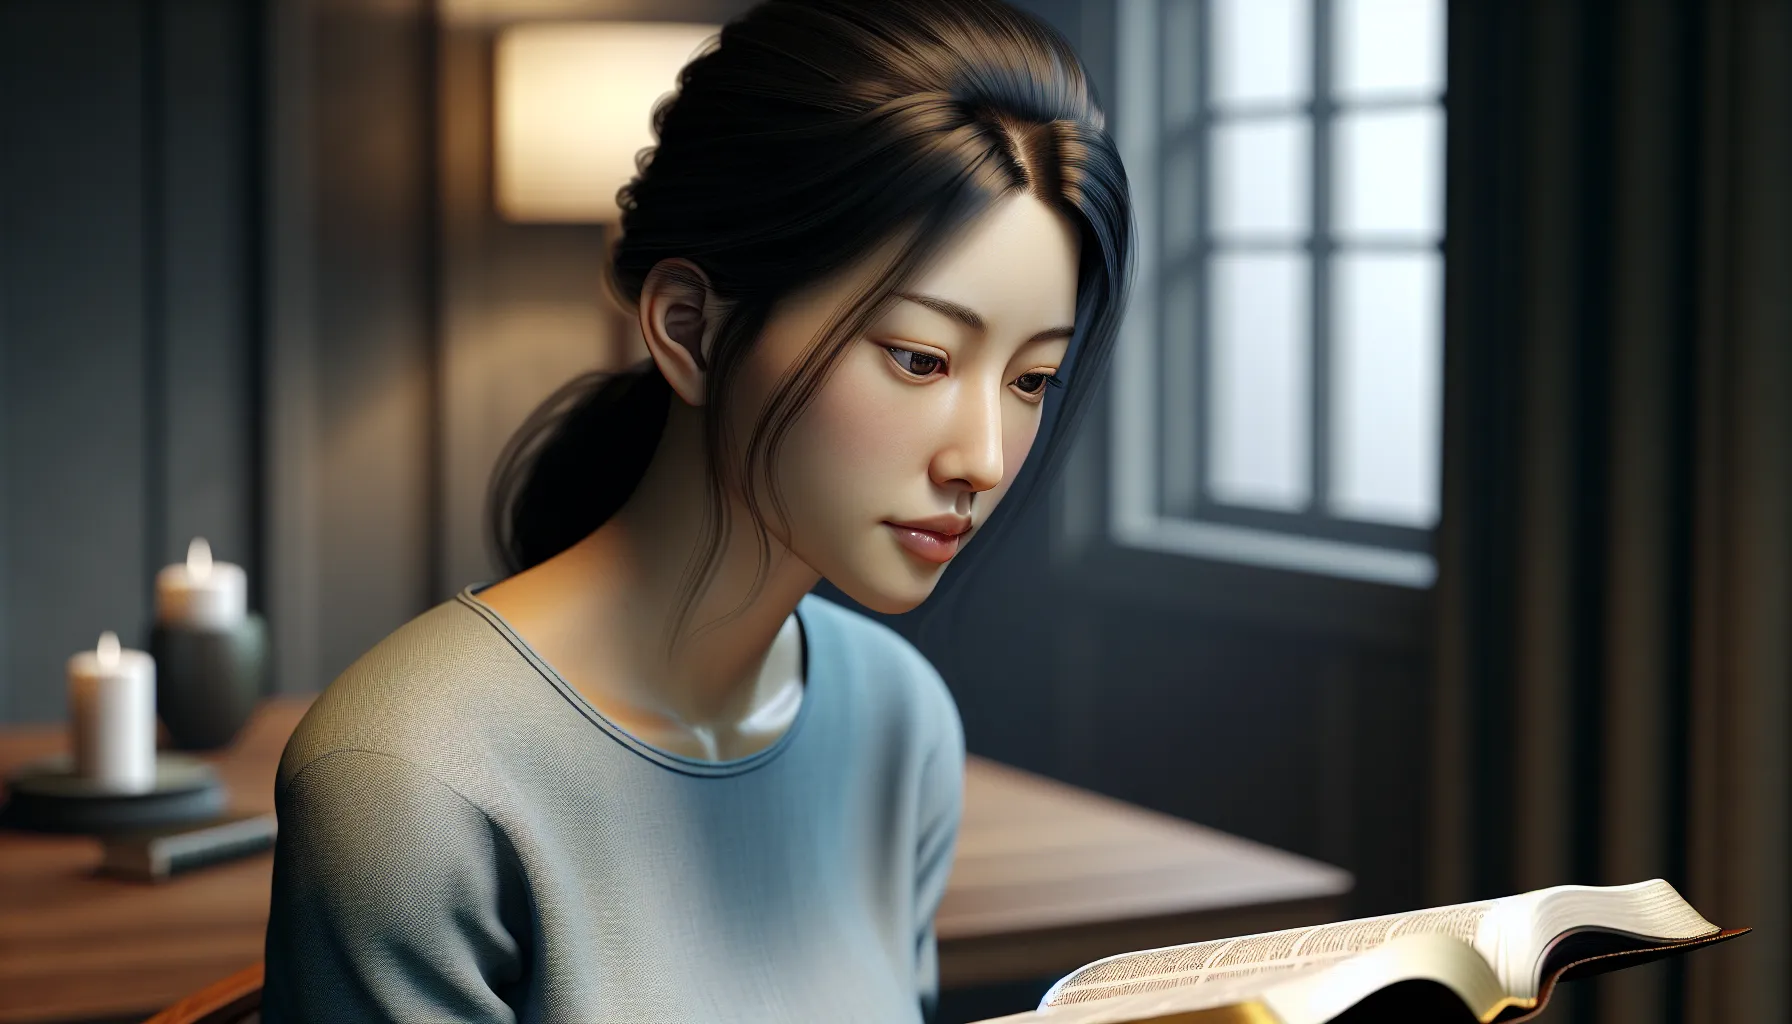 Imagen ilustrativa de una persona leyendo la Biblia y reflexionando sobre su responsabilidad personal.